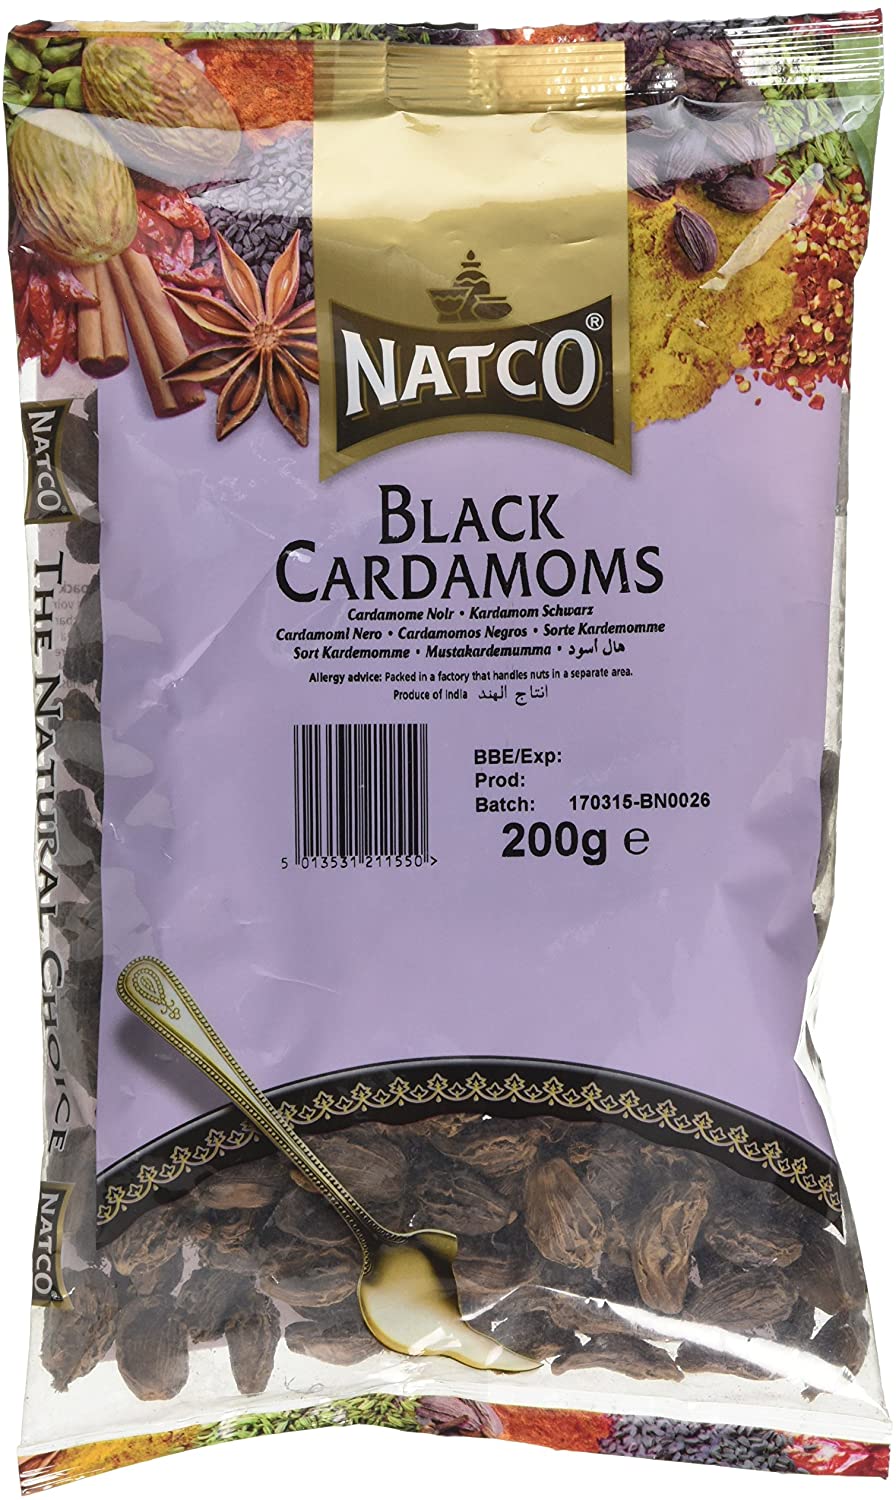 Natco Black Cardamoms 200g